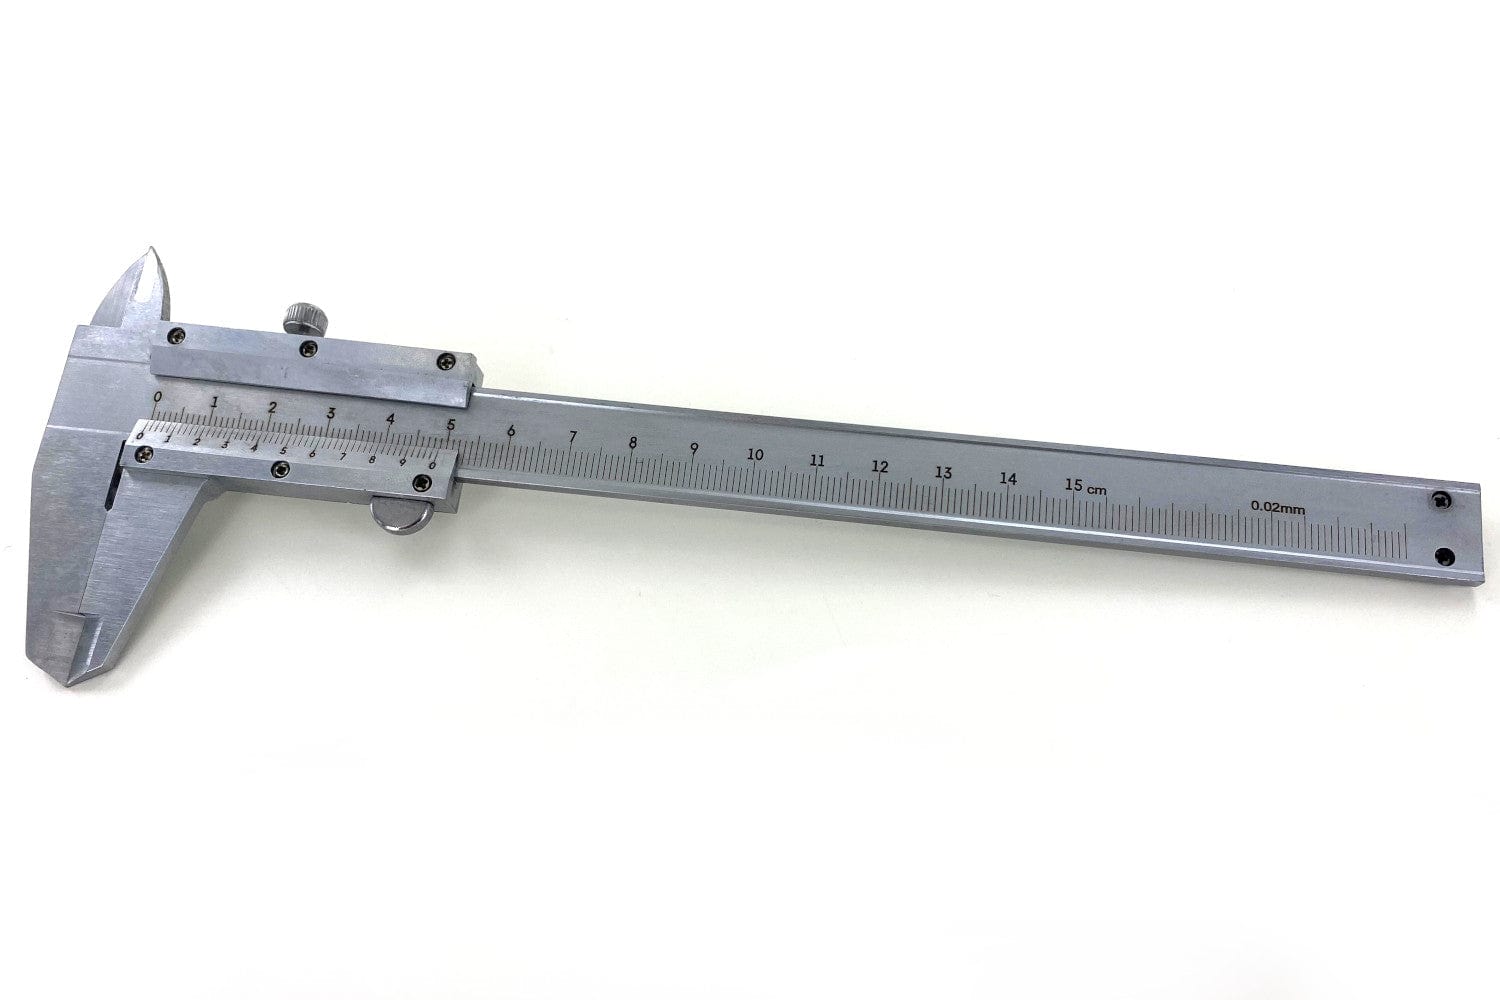 Metal Vernier Caliper, 150 mm (0.02 mm) – Arbor Scientific